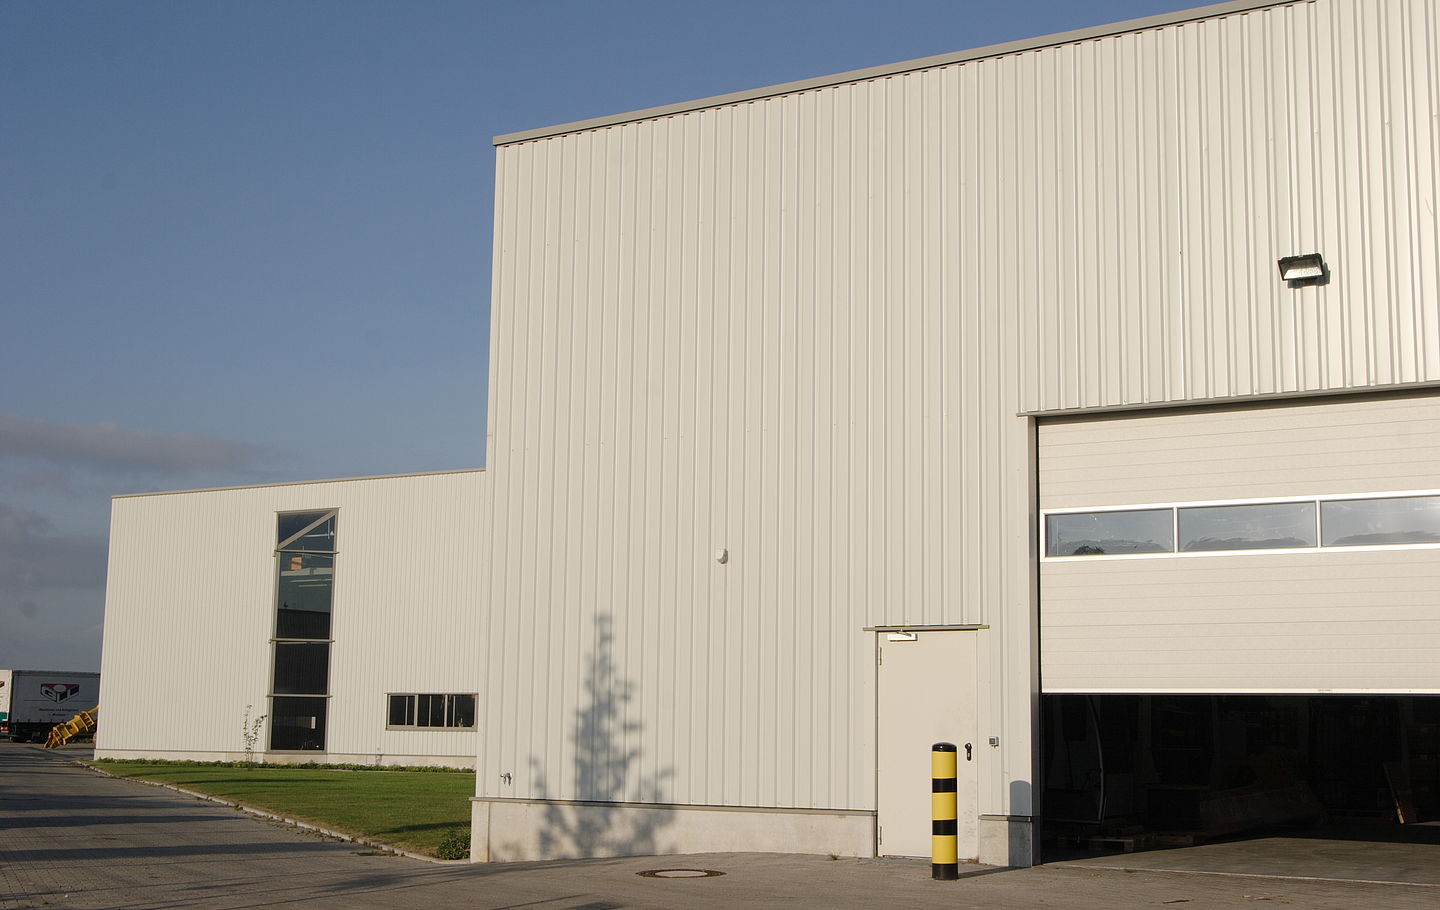 Wirtschaftliche Systemhallen für einen Anlagenhersteller in Monheim erstellt von Schreiber Stahlbau